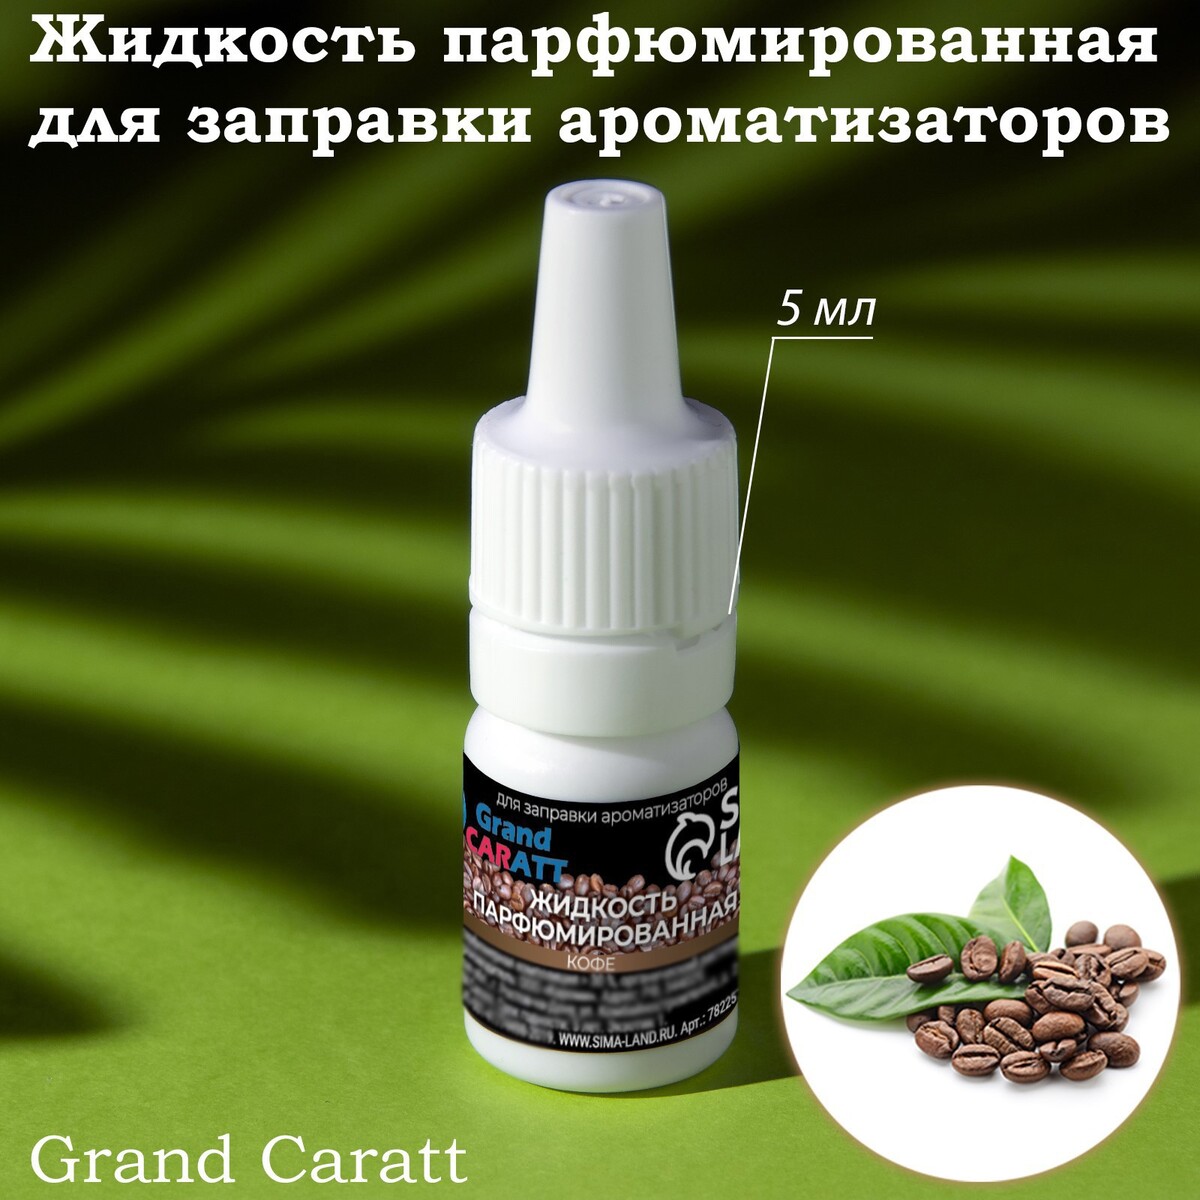 Жидкость парфюмированная grand caratt, для заправки ароматизаторов, кофе, 5 мл жидкость парфюмированная grand caratt для заправки ароматизаторов апельсин 5 мл